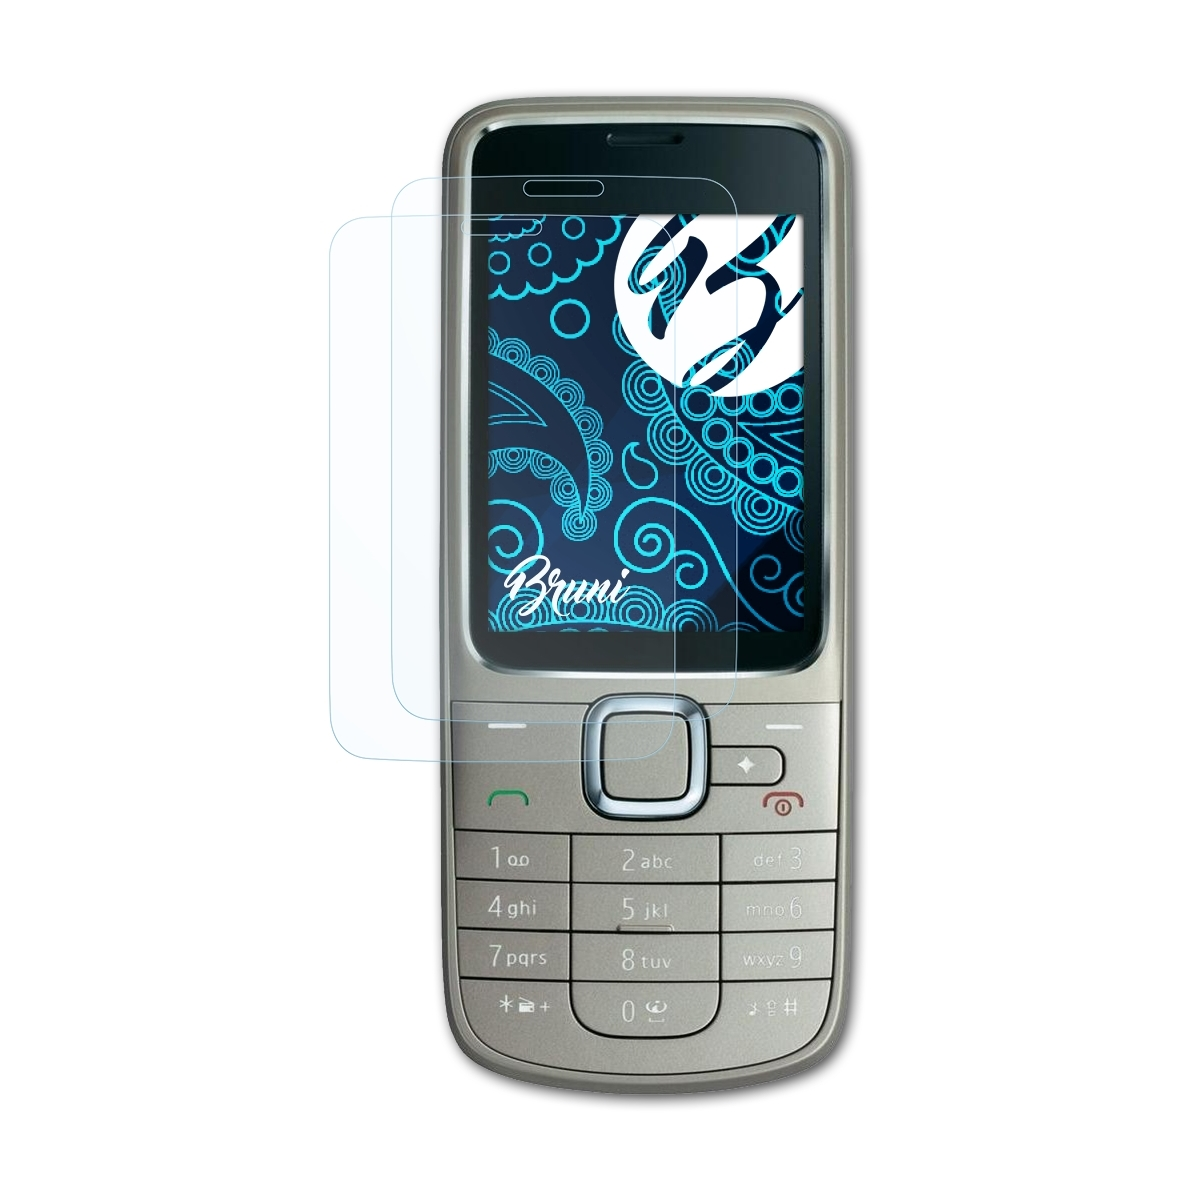 BRUNI 2x Basics-Clear Schutzfolie(für Nokia Navigation Edition) 2710